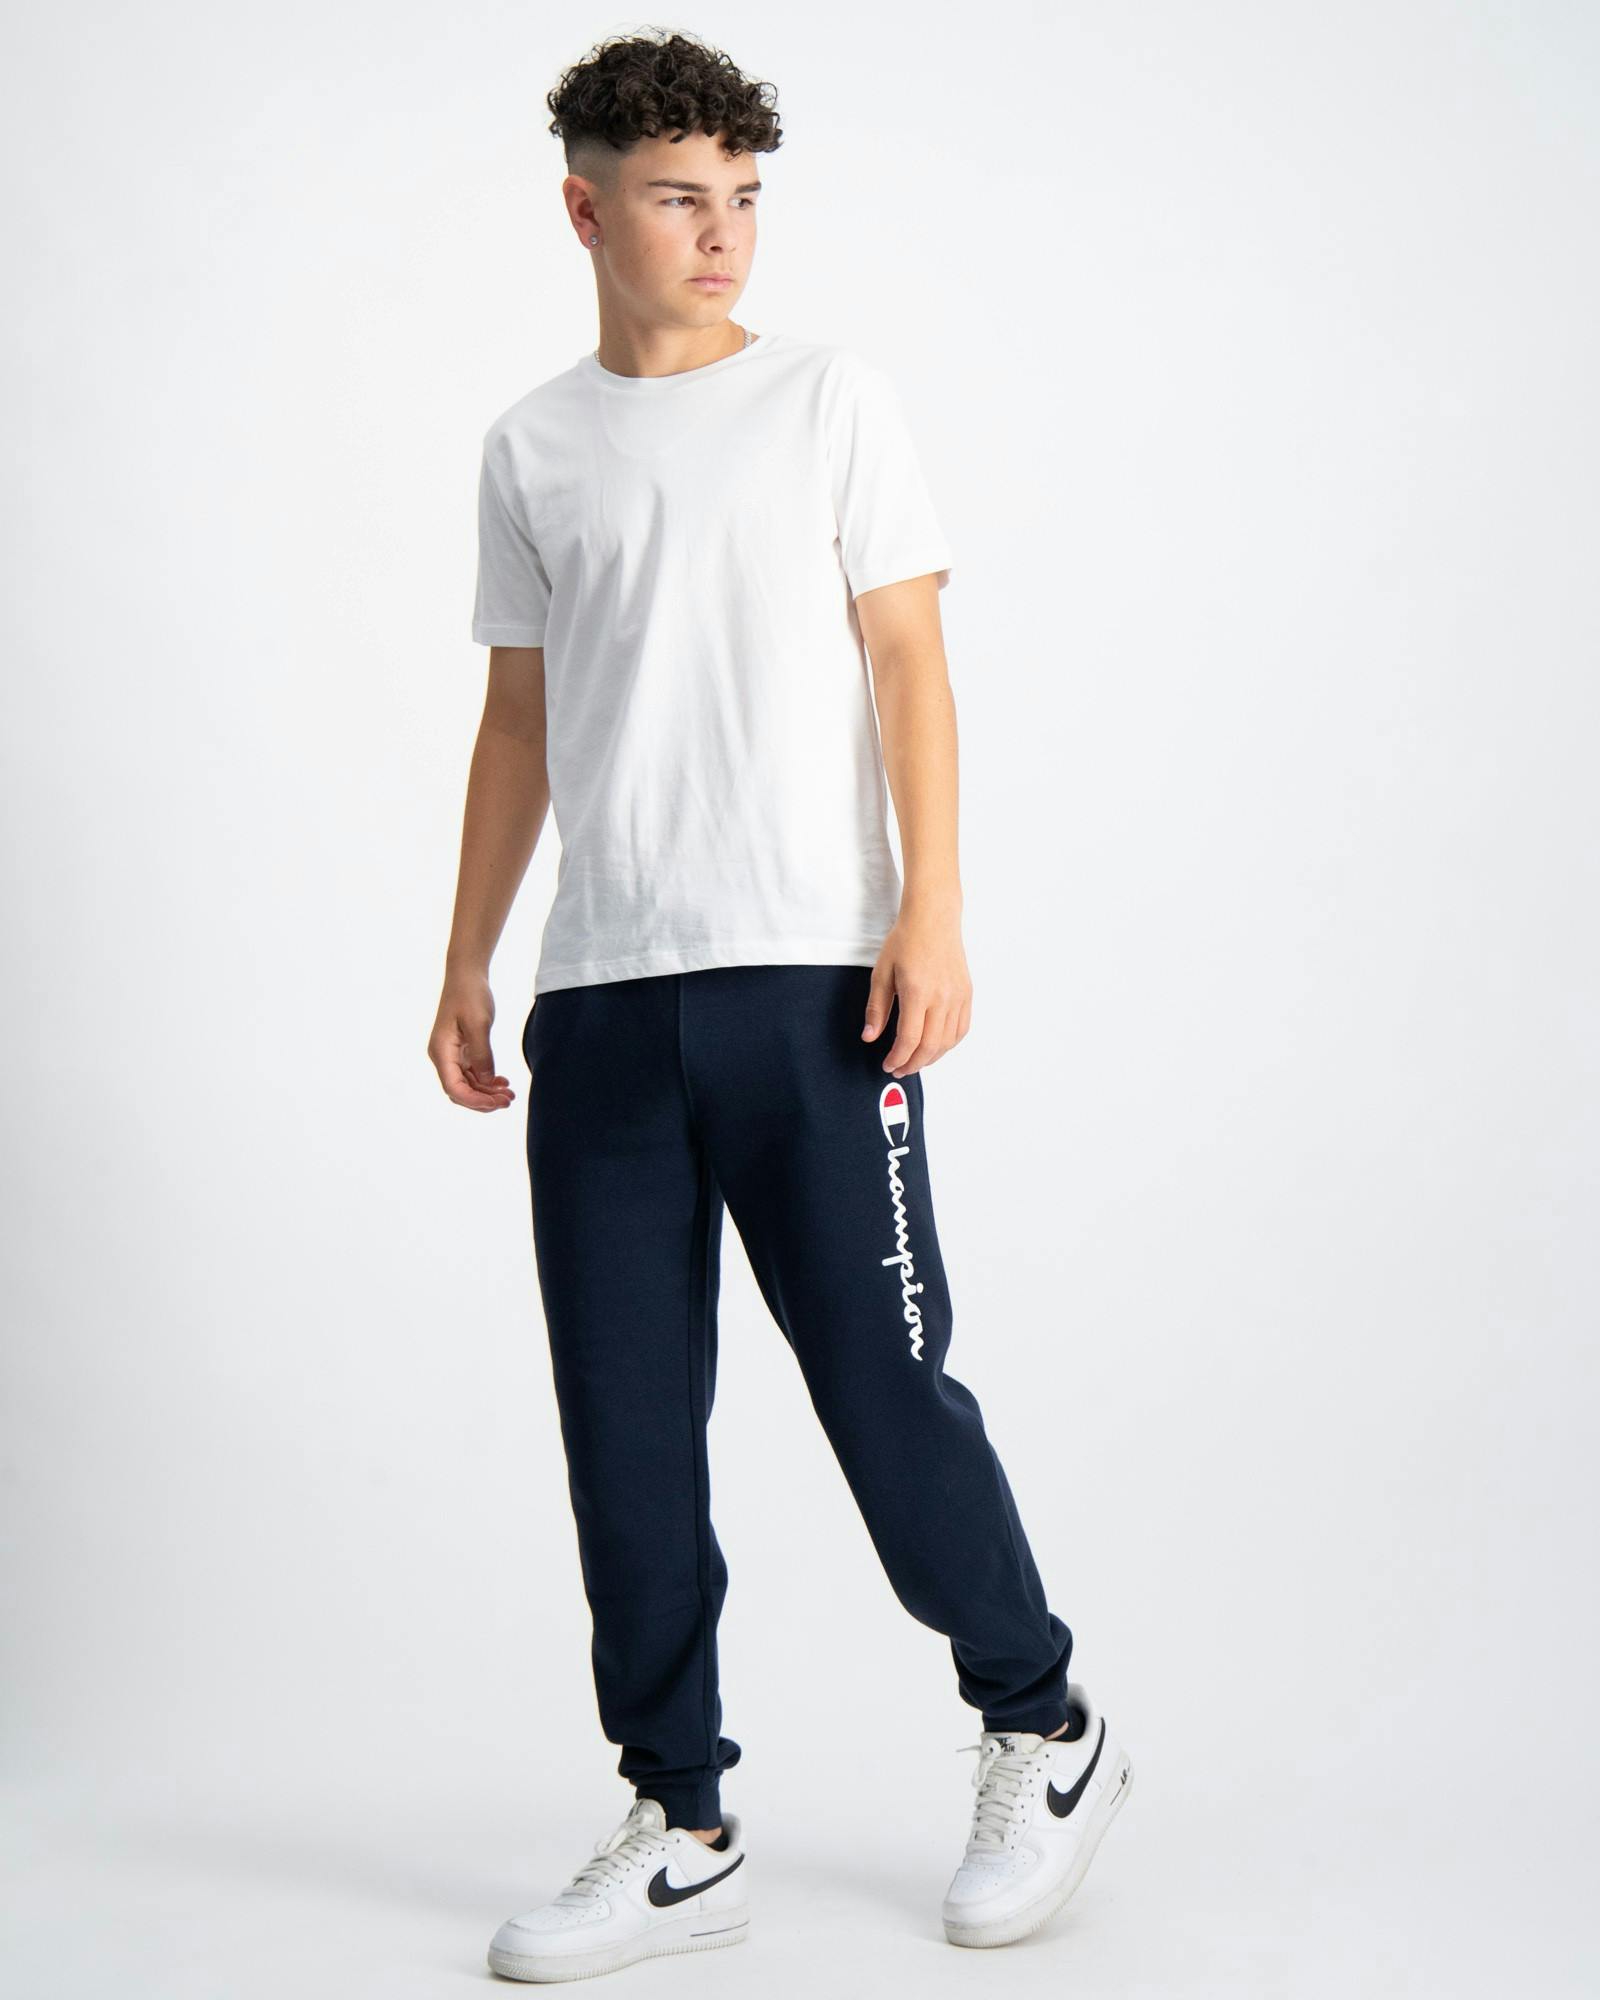 Brand | Store Kids Cuff für Blau Rib Jungen Pants